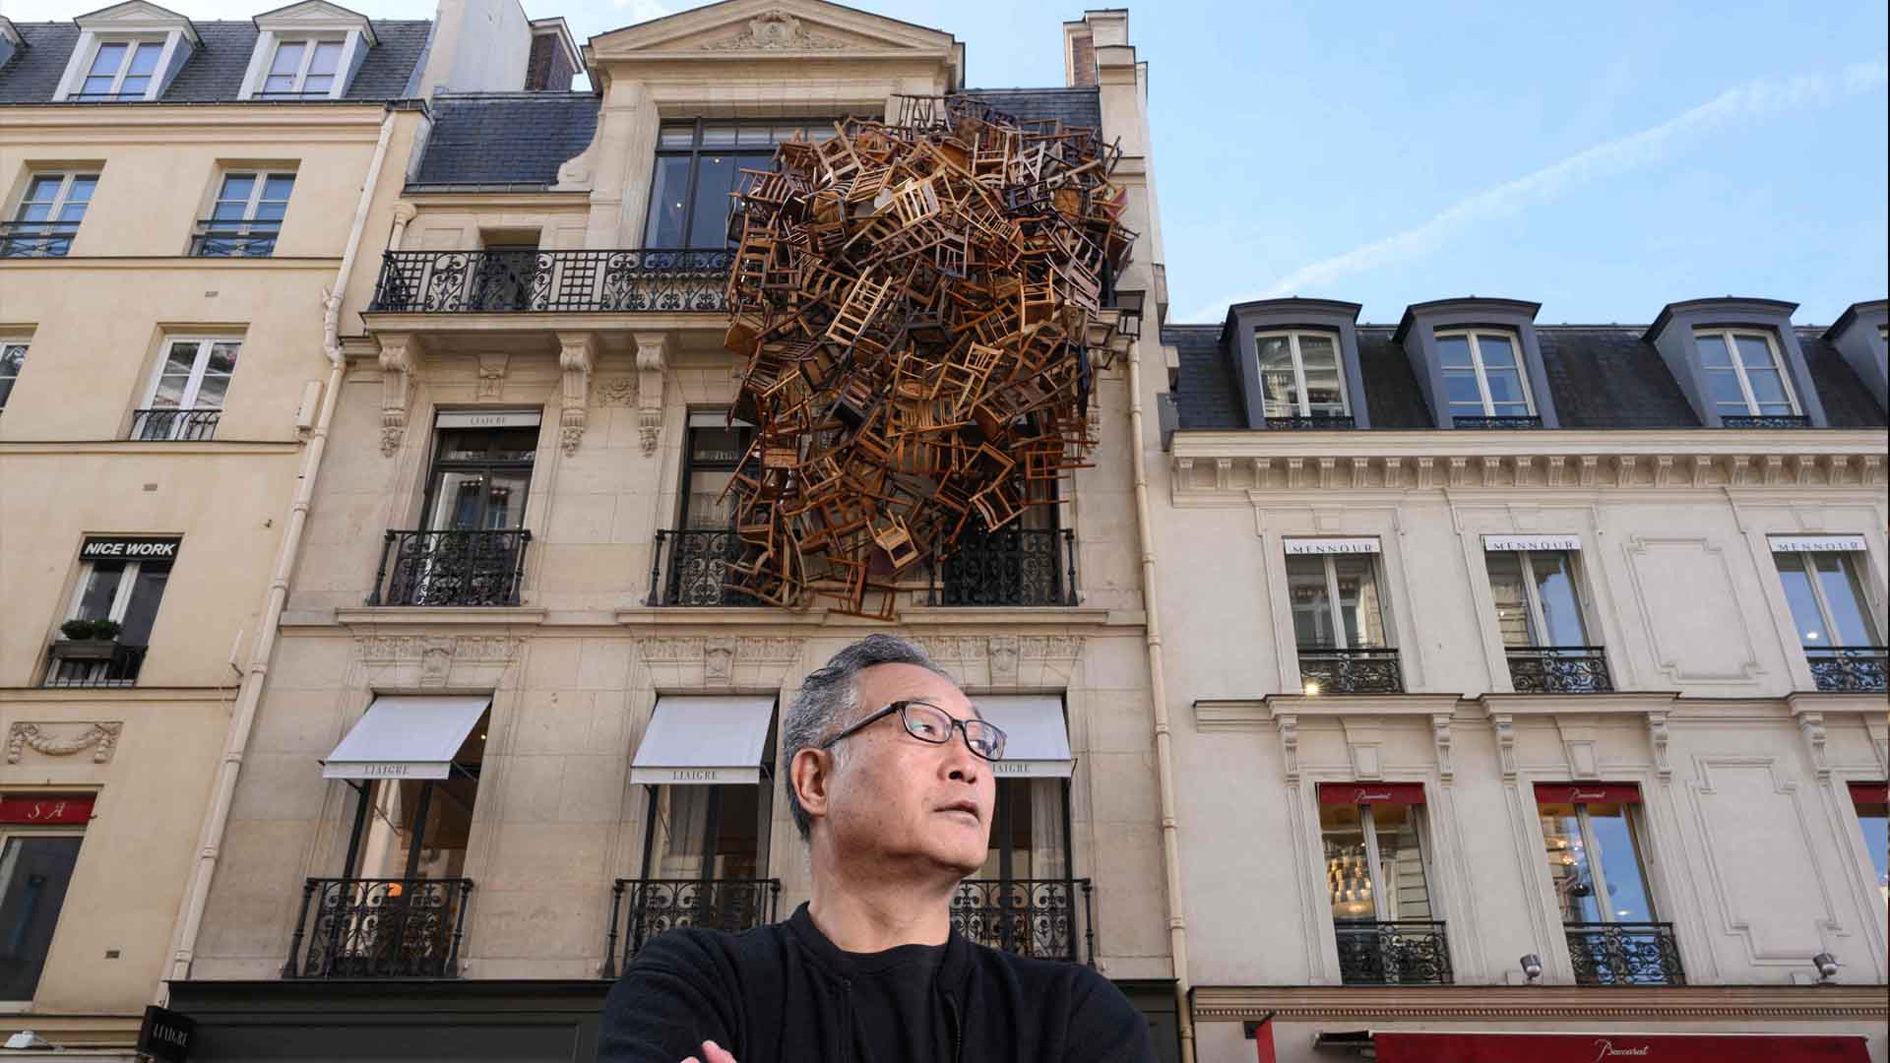 الفنان تاداشي كاواماتا يزيّن واجهة أحد المباني في باريس بمجموعة من الكراسي